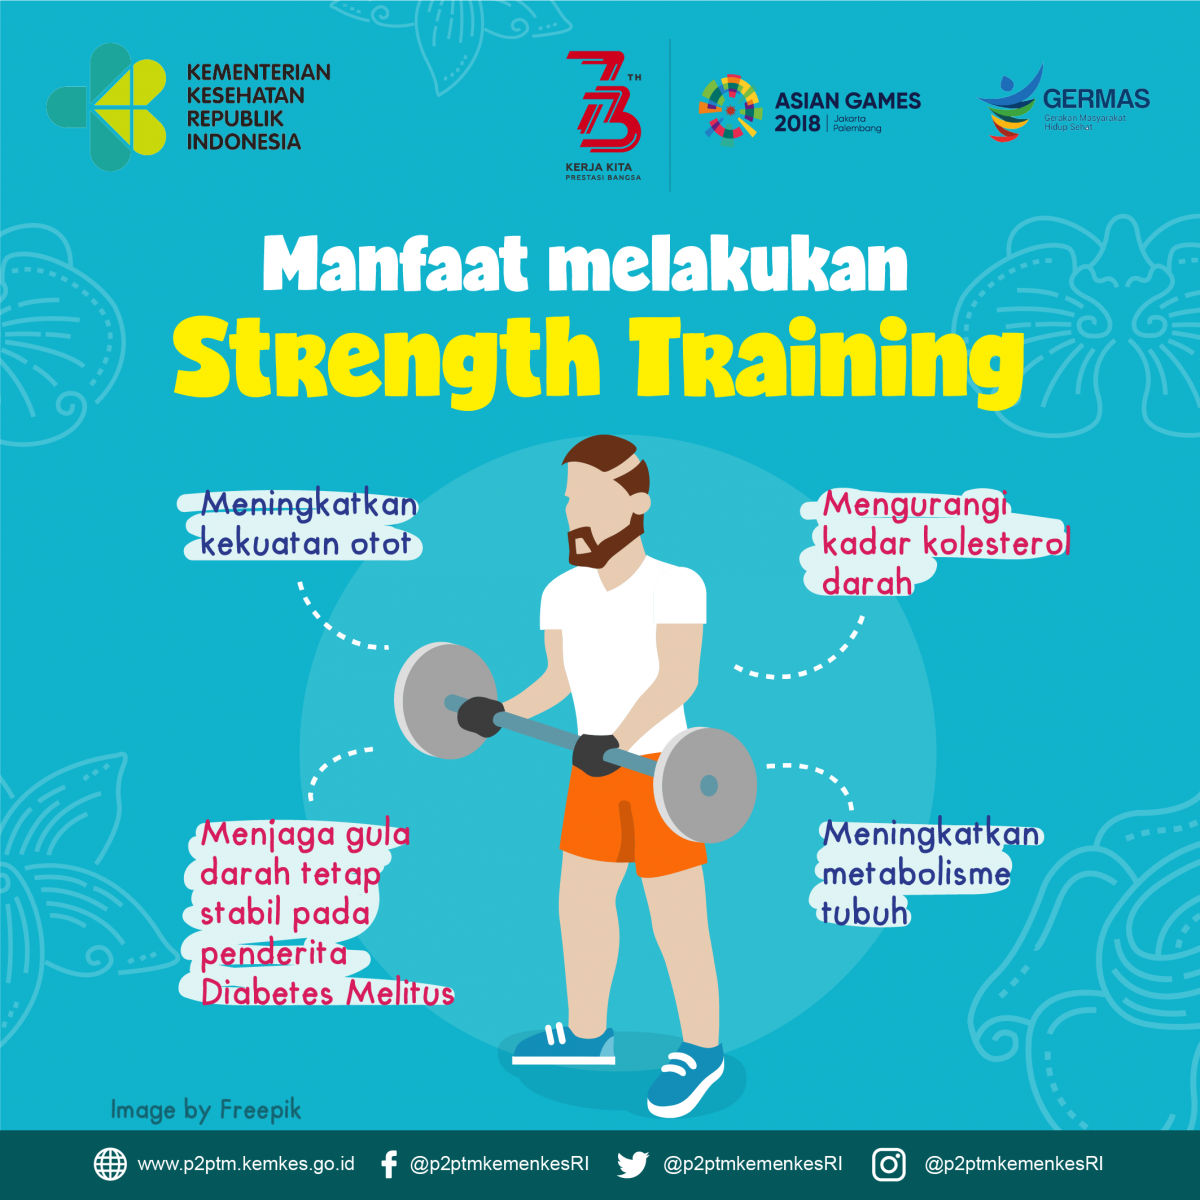 Apa manfaat melakukan strength training ?